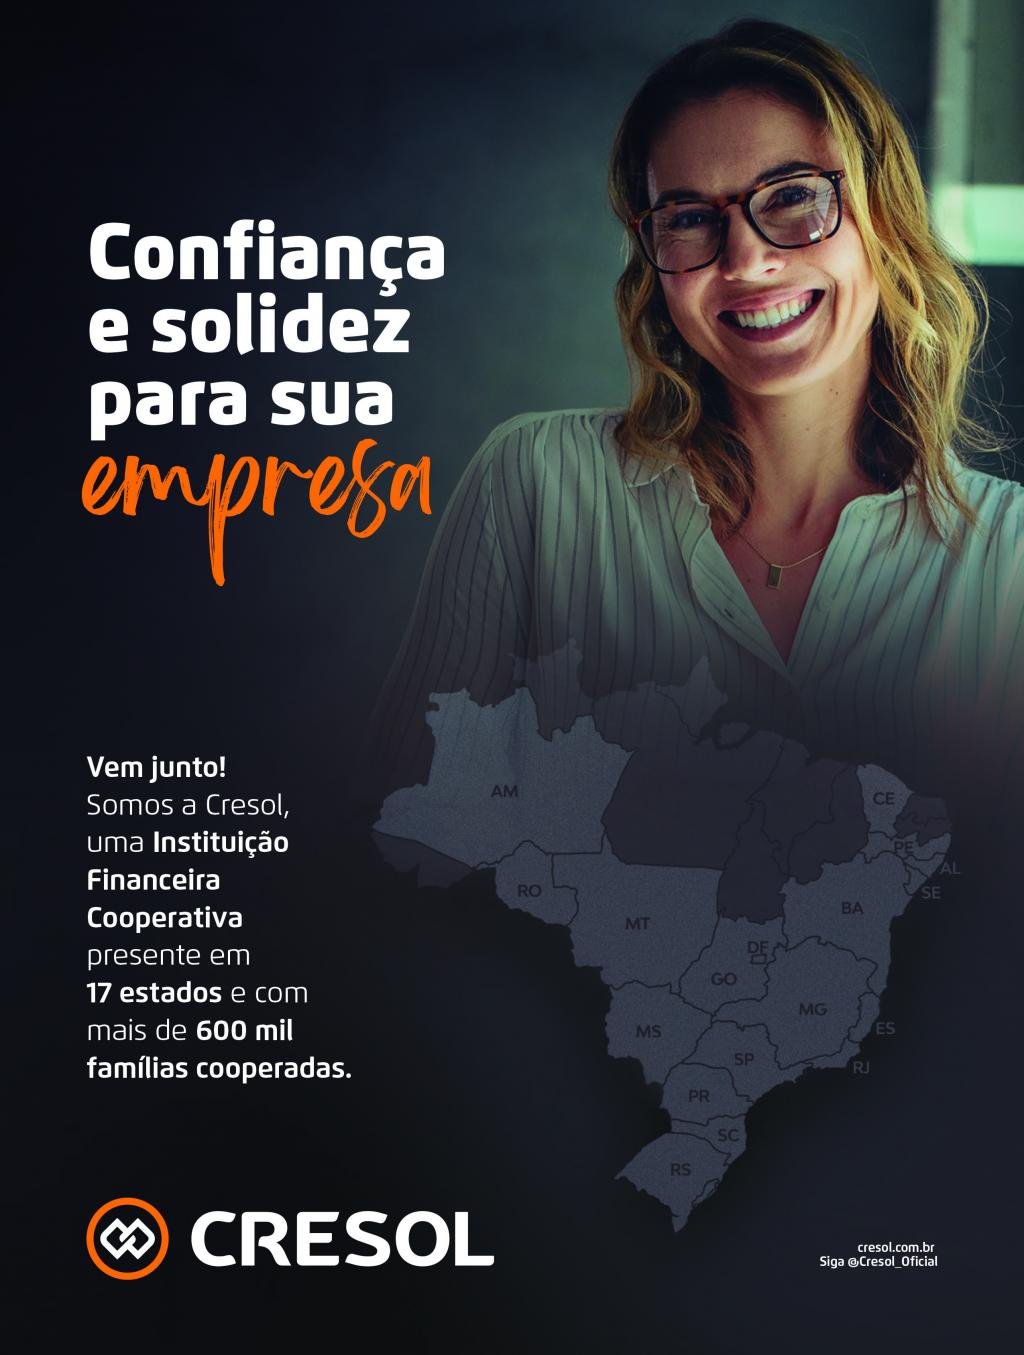 https://jornalnoroeste.com/uploads/images/2021/04/cresol-realiza-doacao-para-a-campanha-bg-3682-22a02.jpg